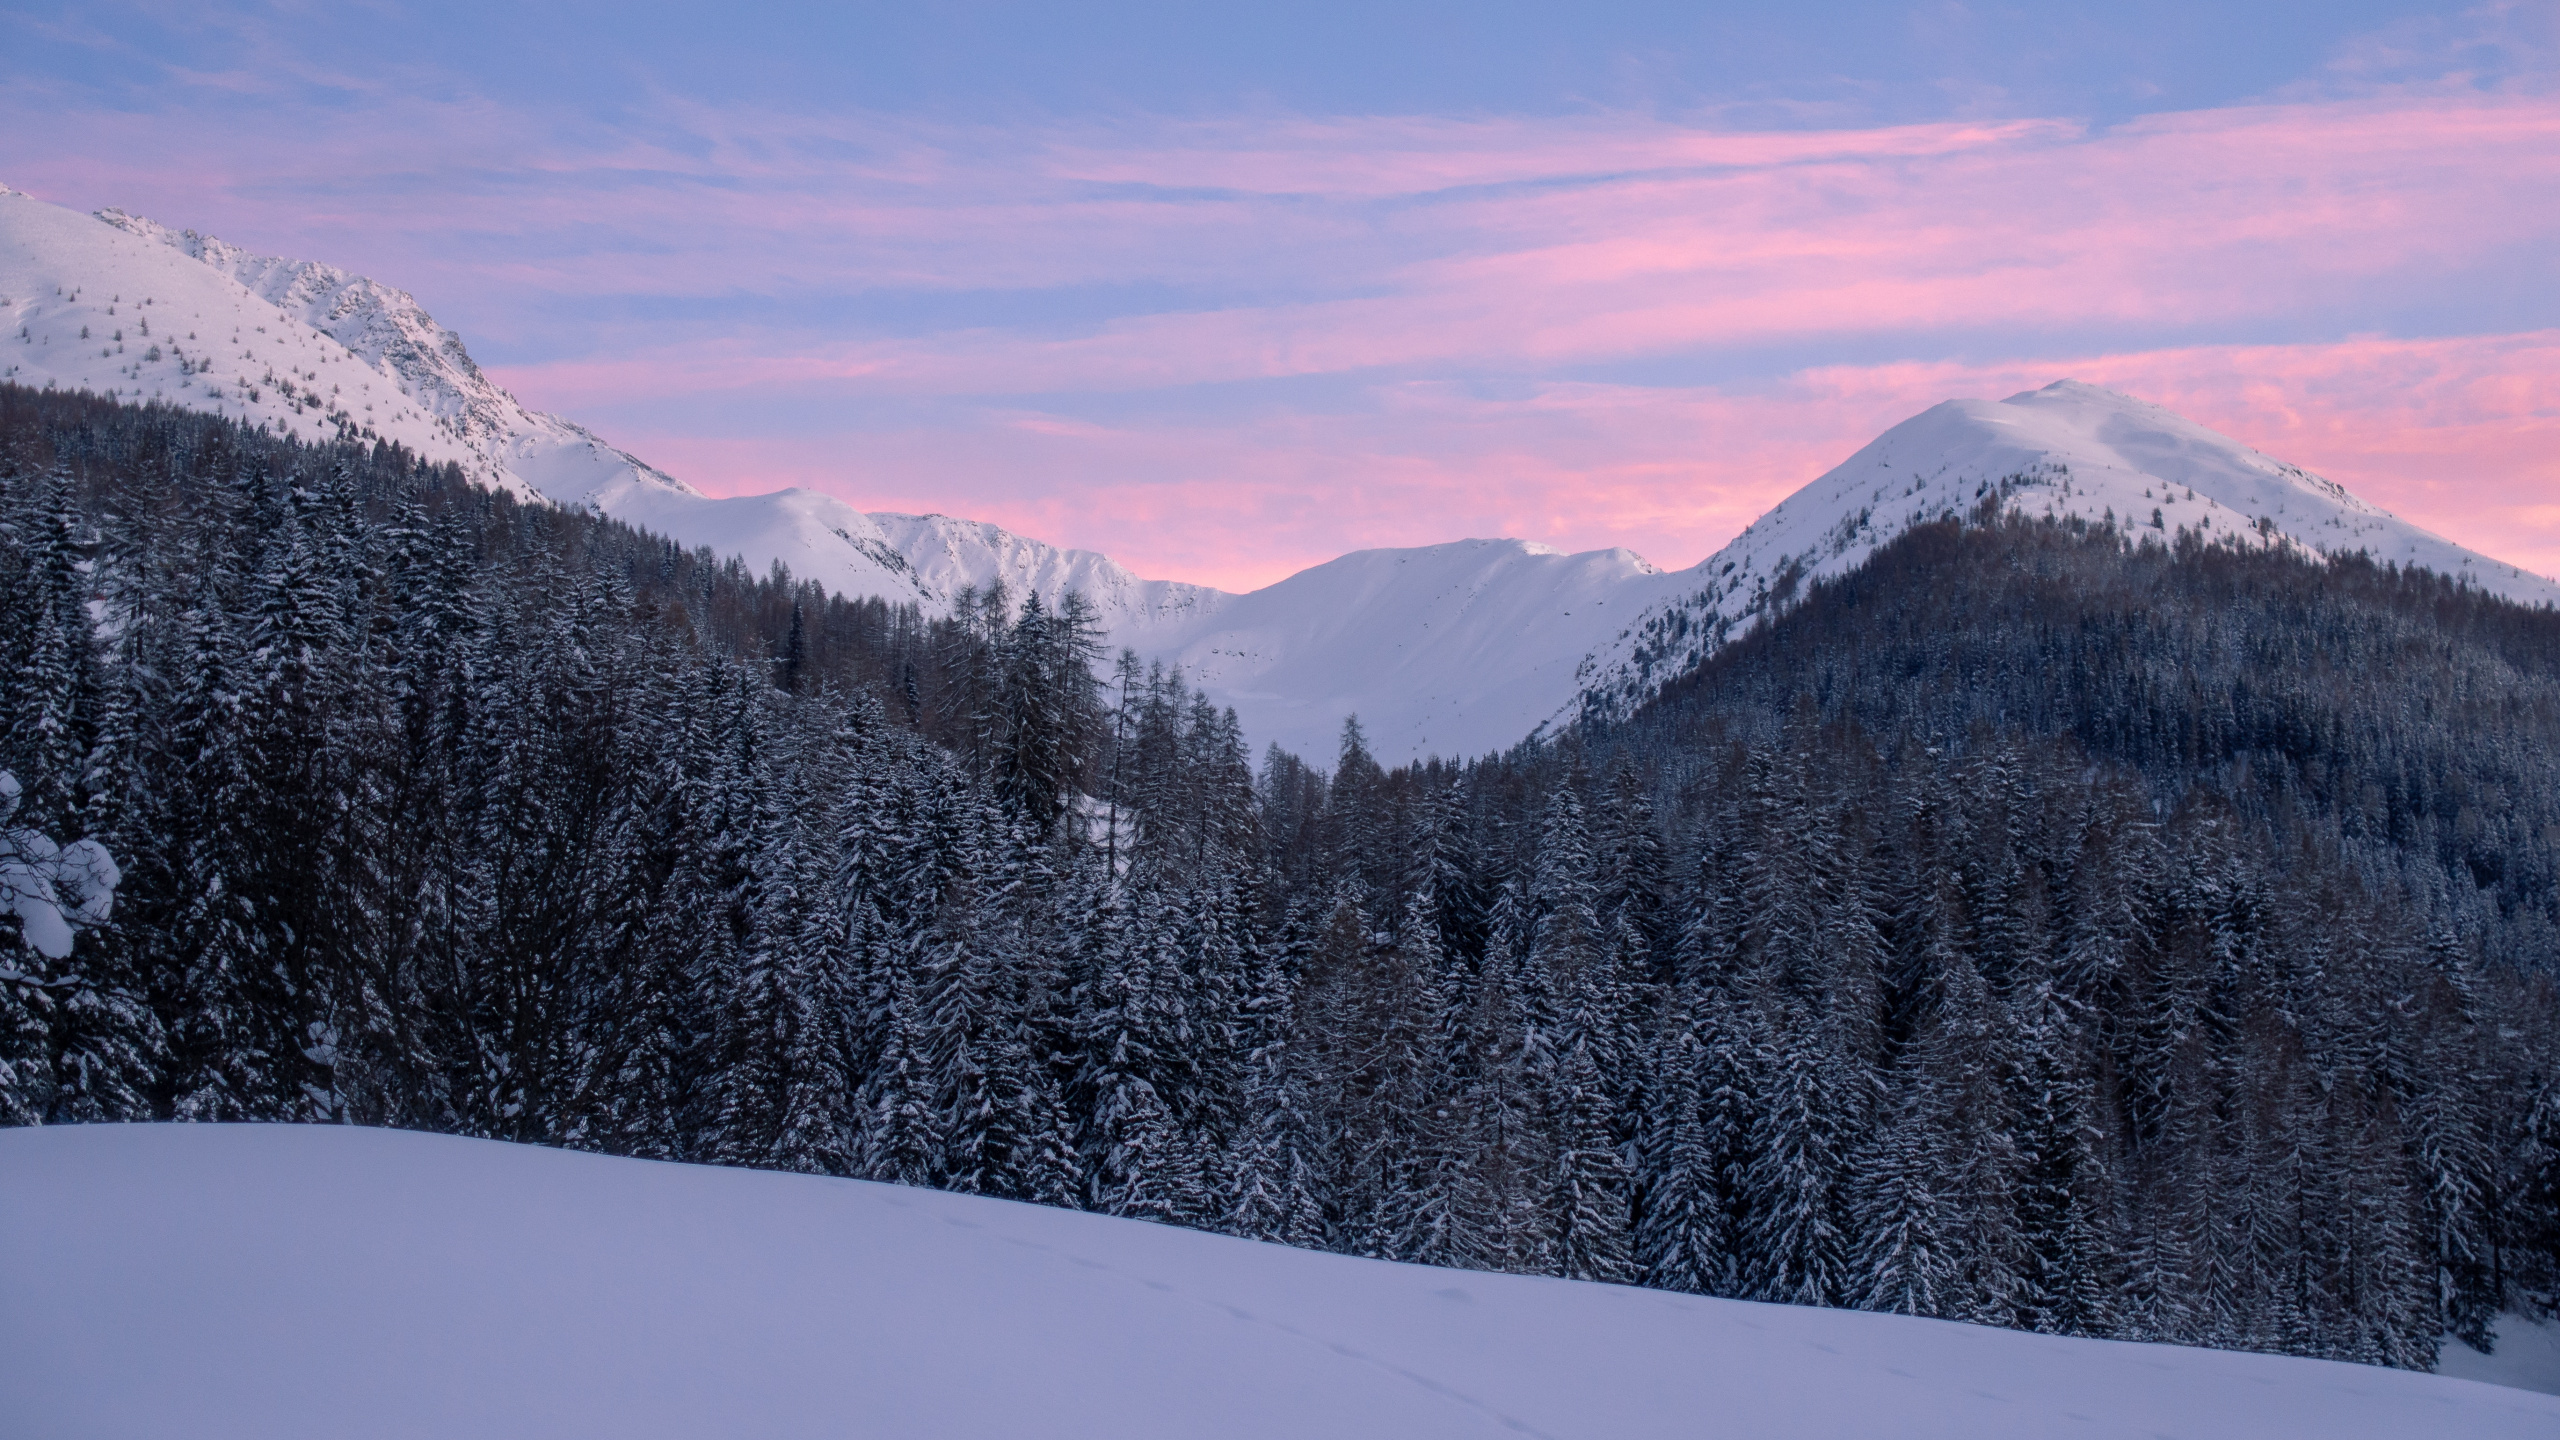 Schnee, Winter, Bergigen Landschaftsformen, Natur, Bergkette. Wallpaper in 2560x1440 Resolution